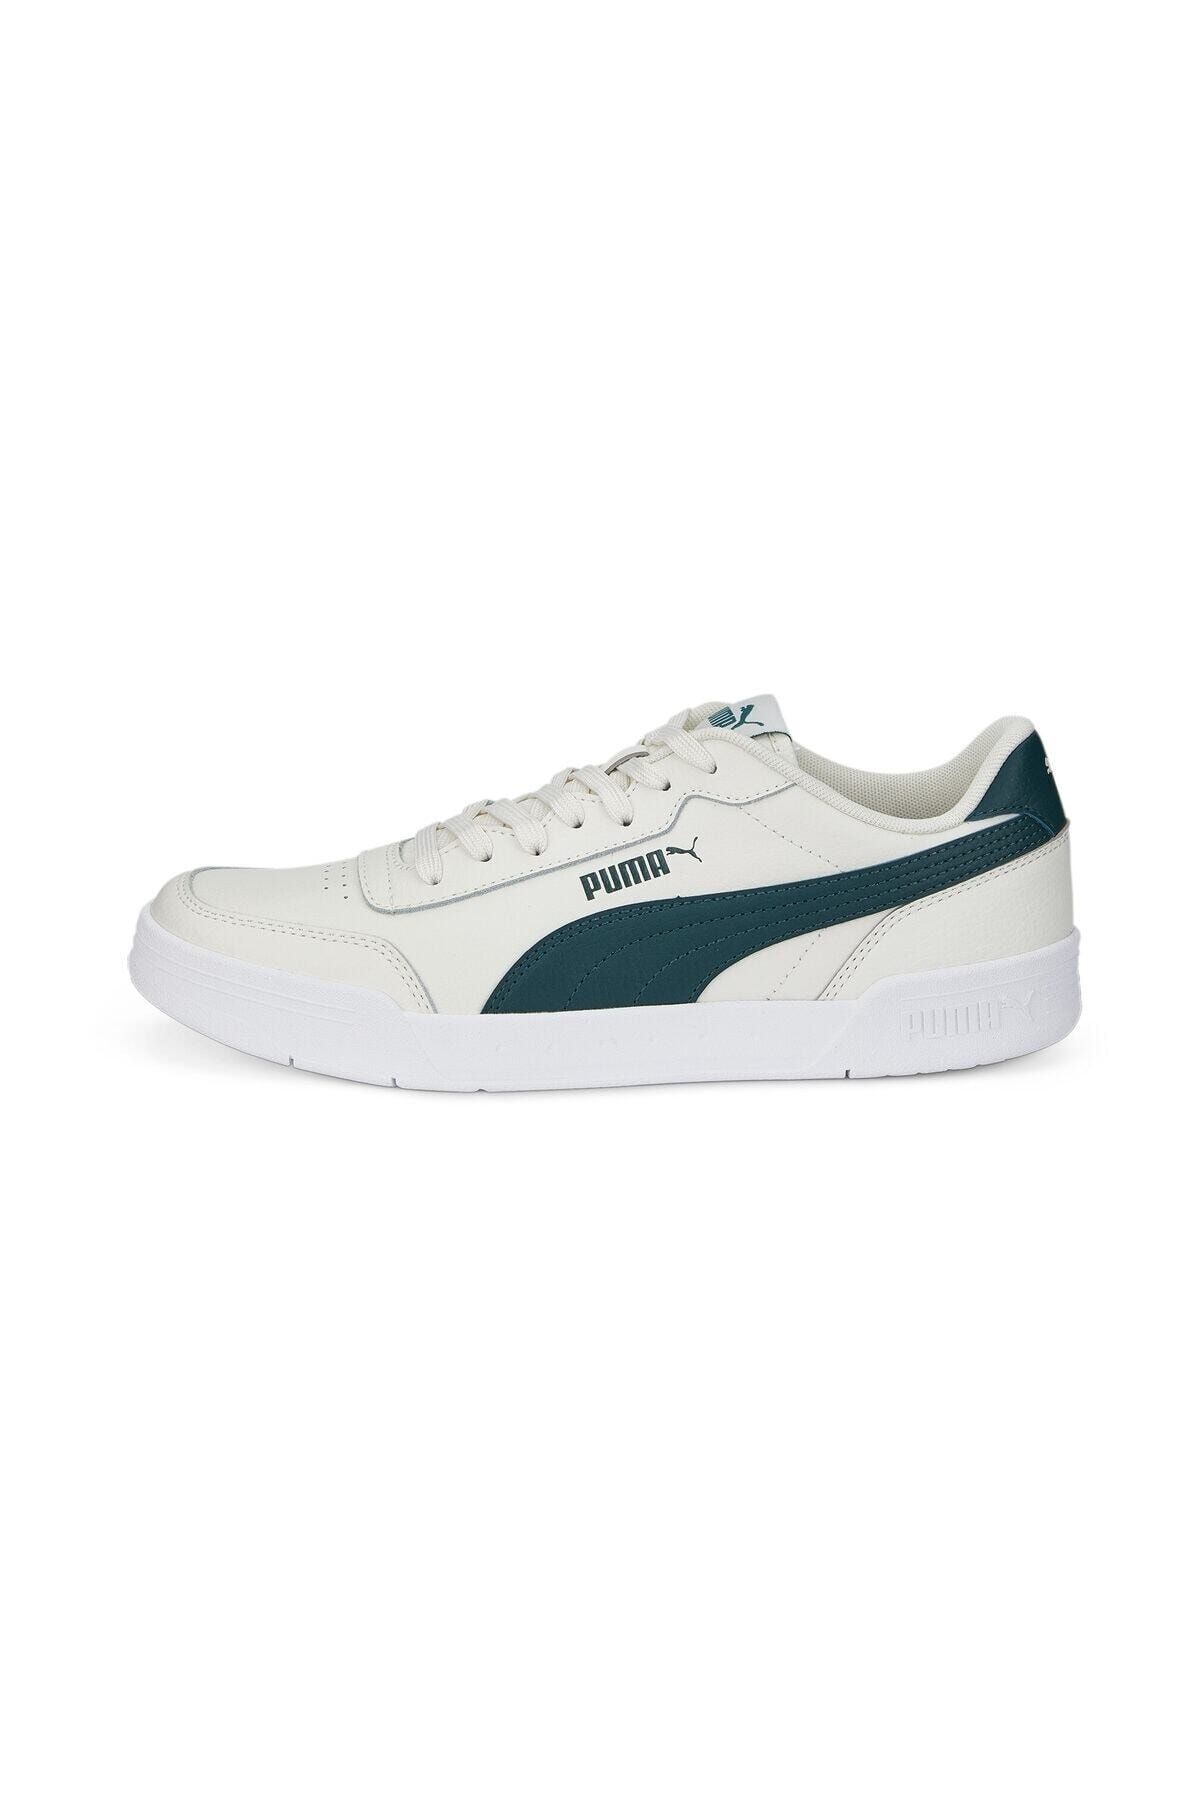 Unisex Sneaker - Caracal Vaporous Gray-Varsity Green - 36986339